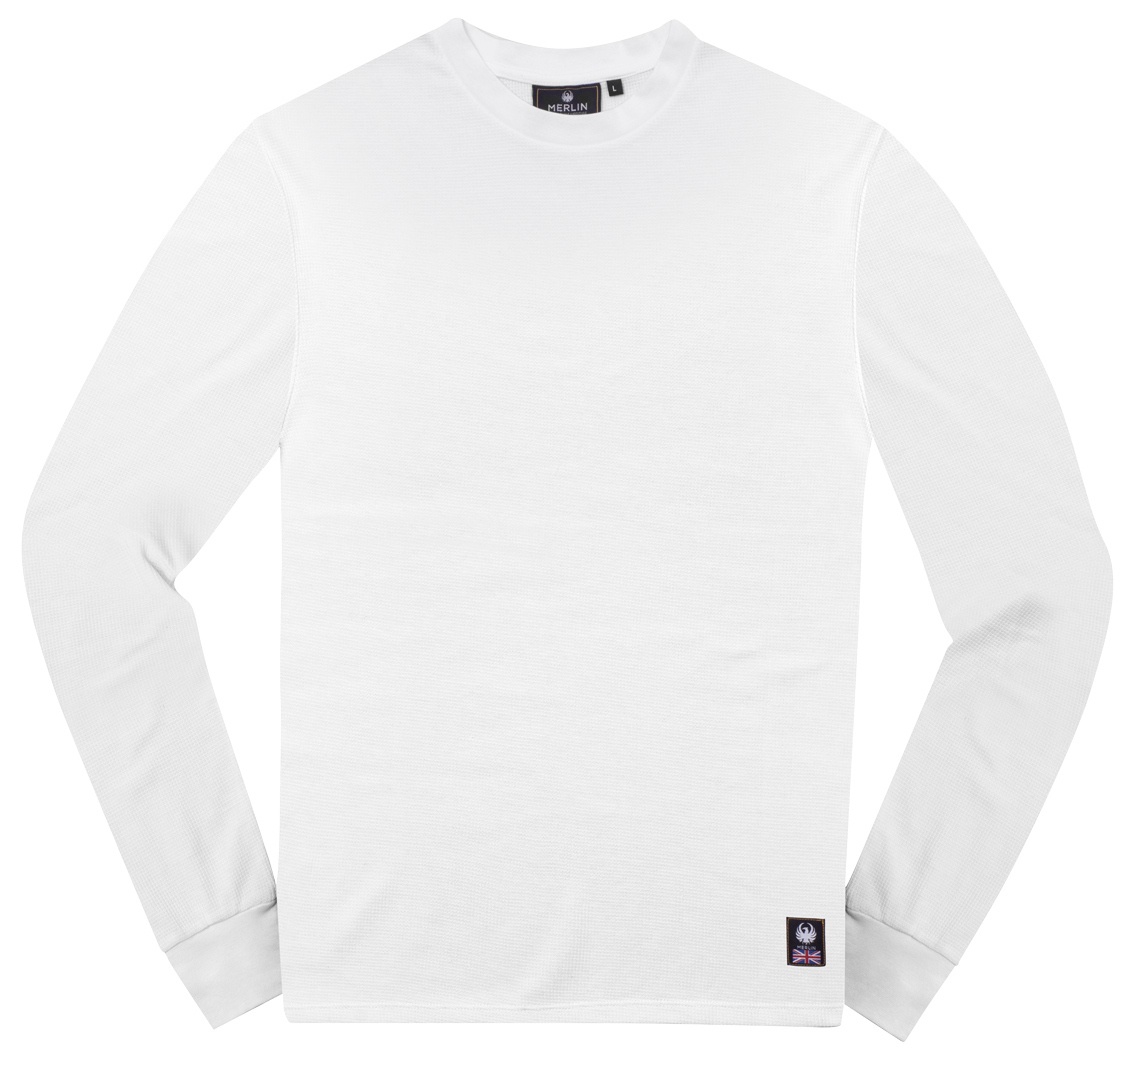 Merlin Kingsley Waffle Knit Longsleeve Overhemd, wit, XL